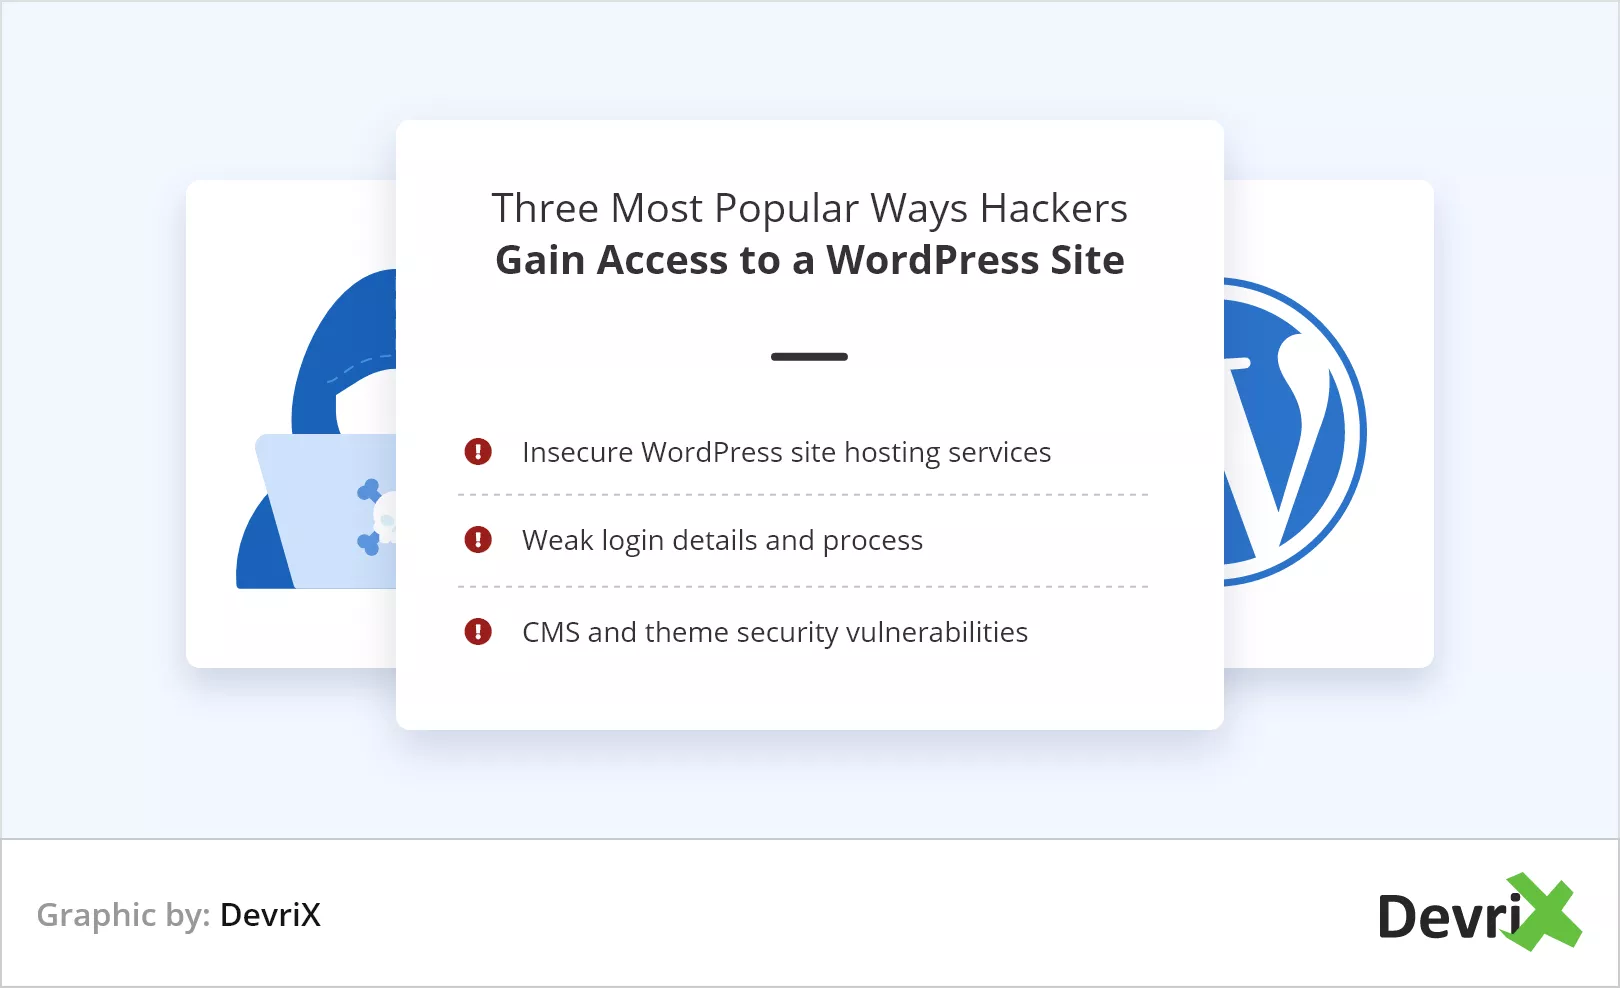 As três maneiras mais populares de os hackers obterem acesso